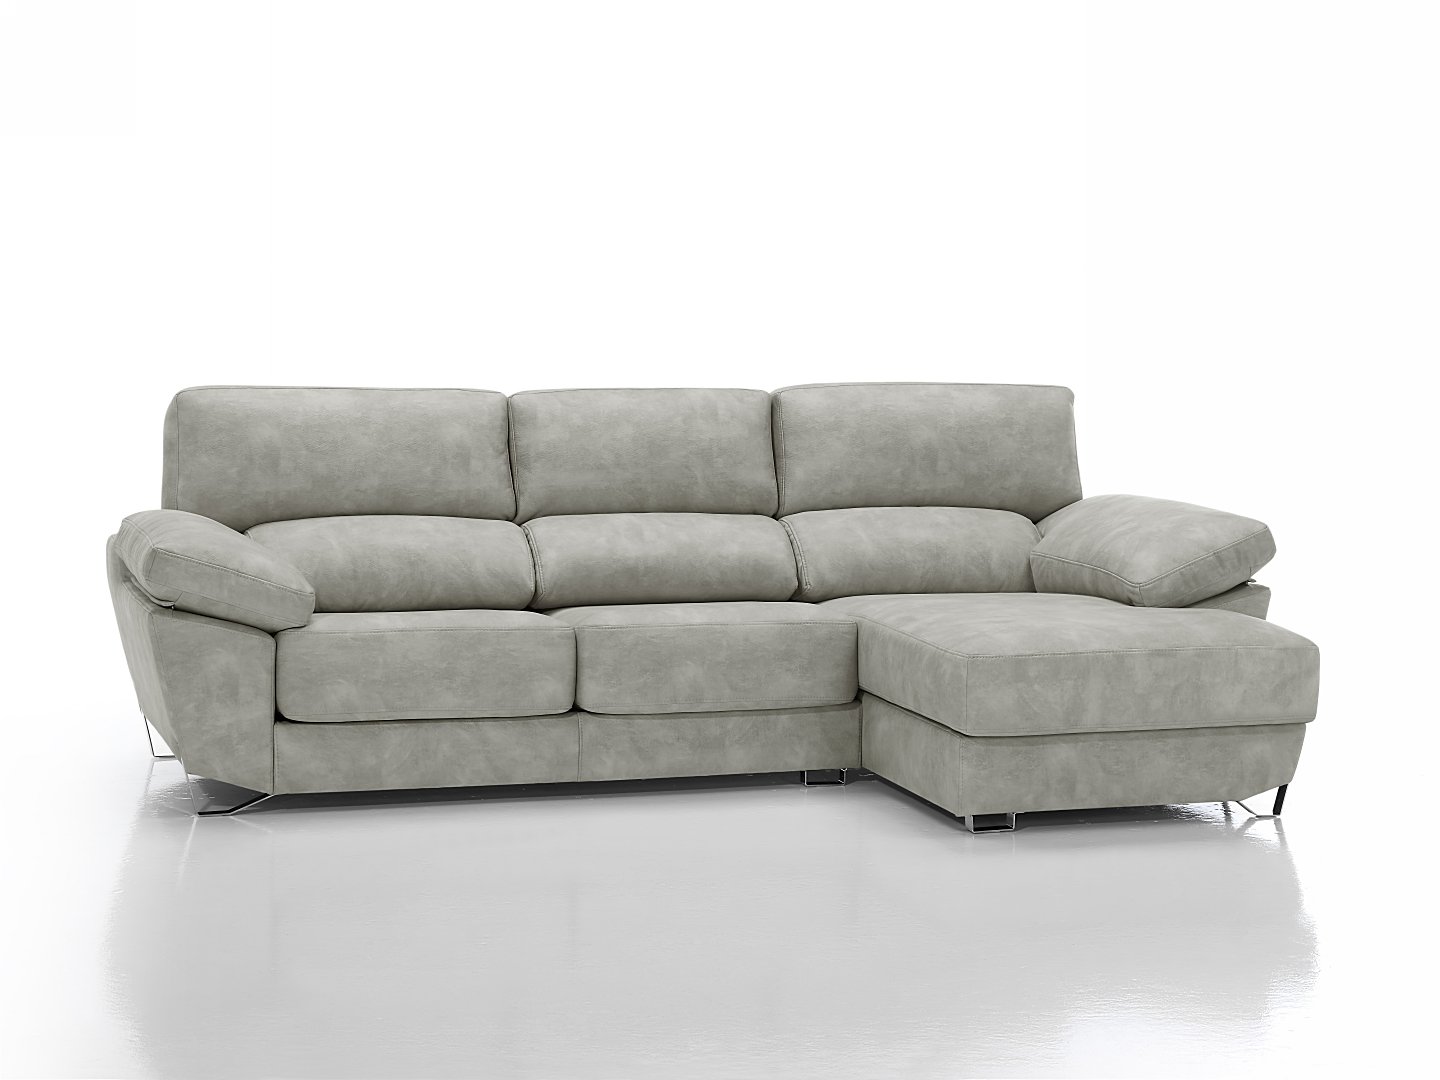 Tango sofá chaise-longue deslizante 01 by Verazzo Design en muebles antoñán® León